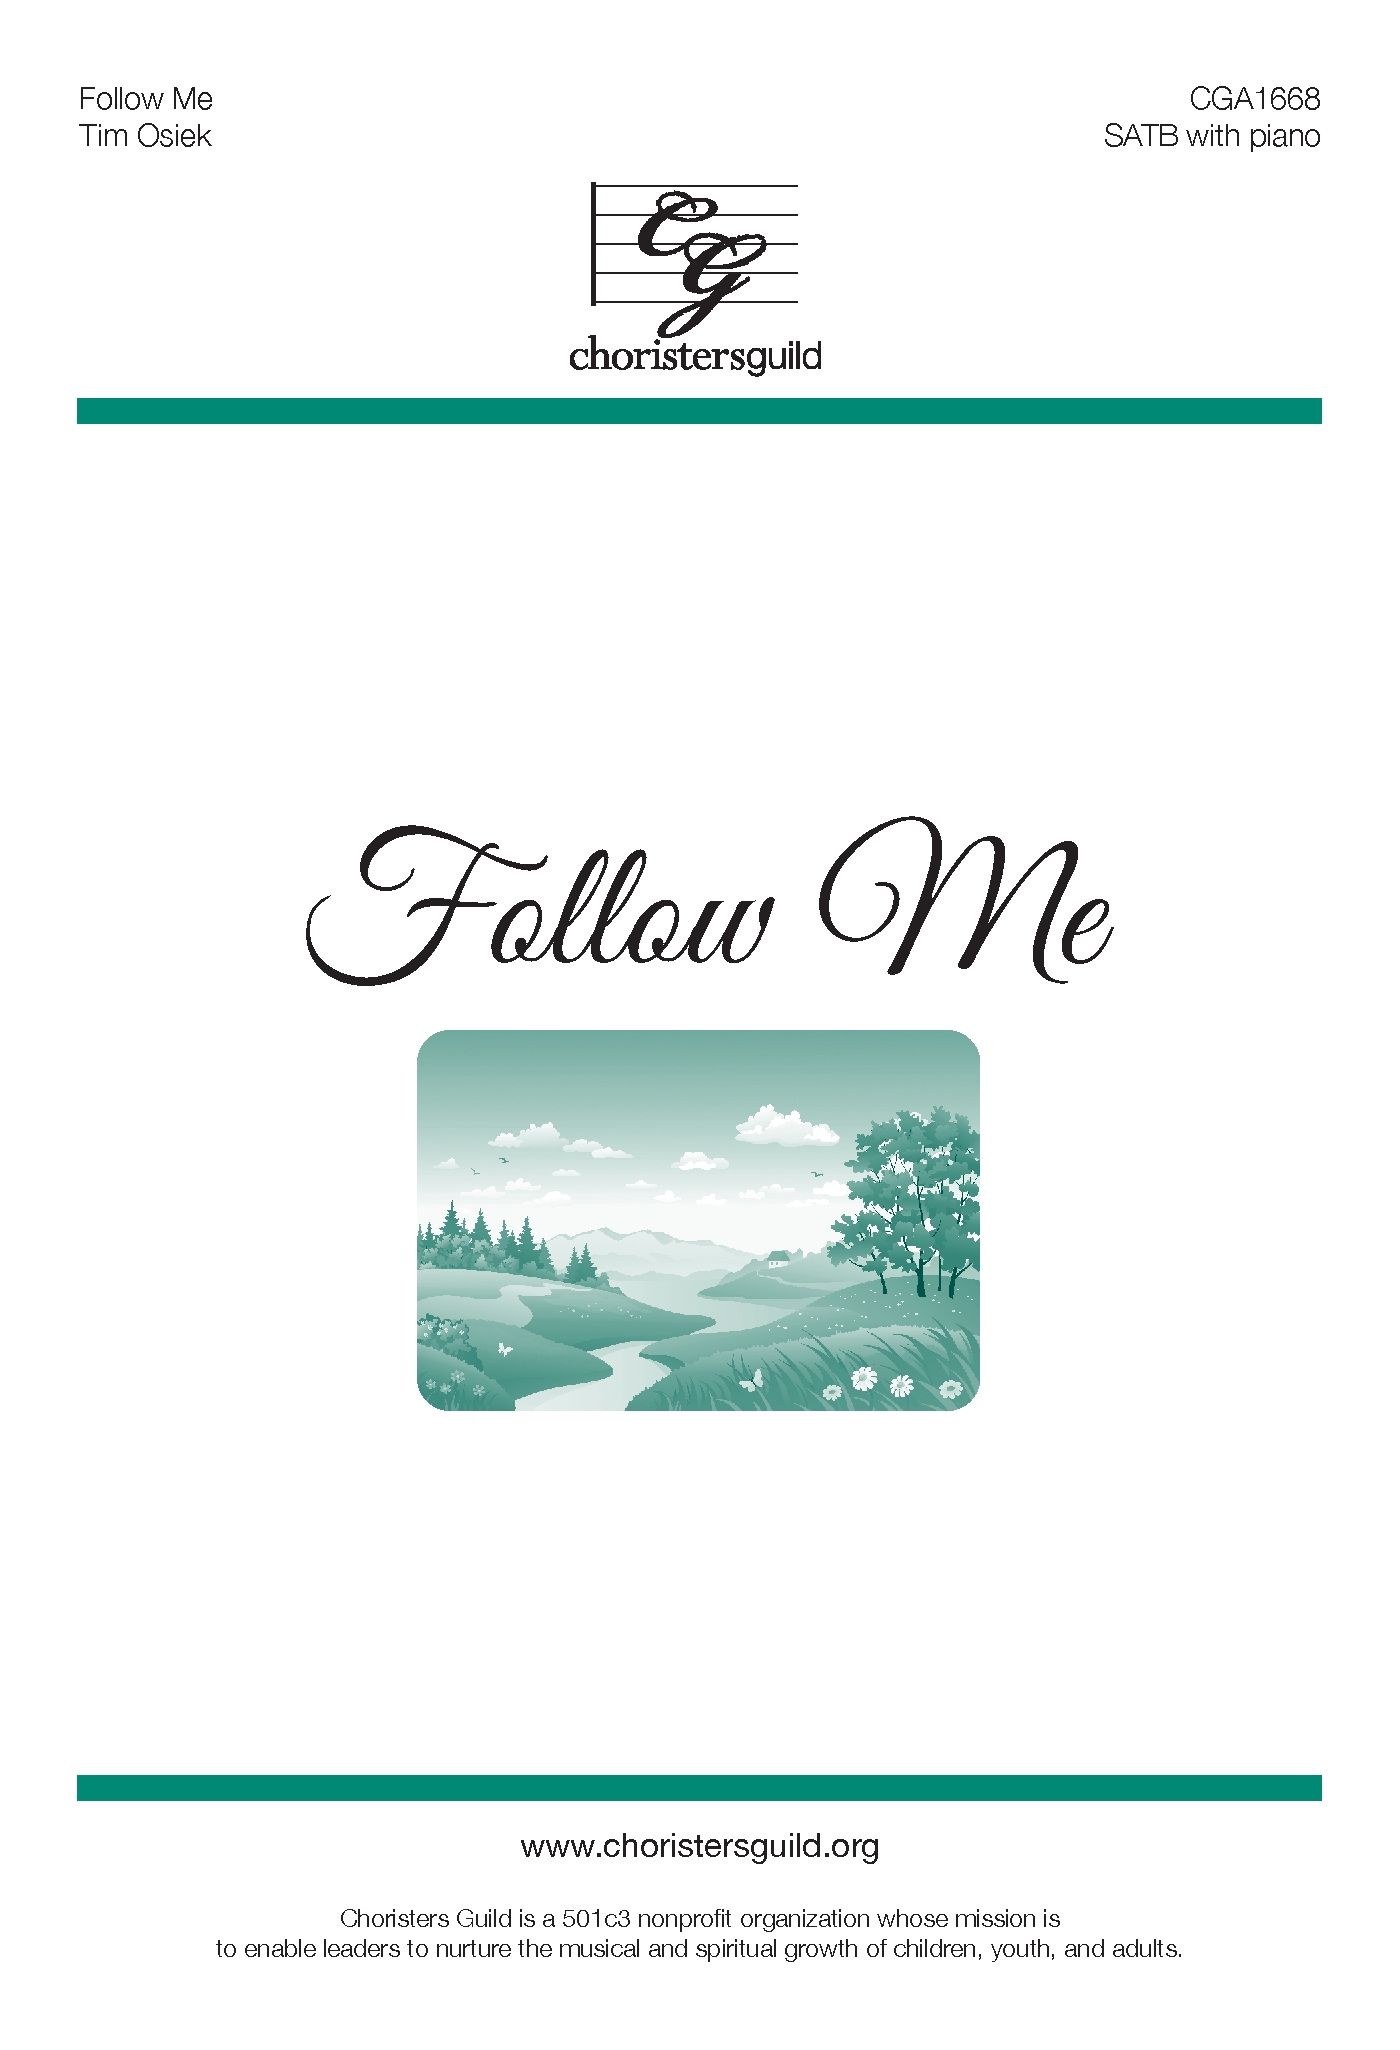 Follow Me - SATB